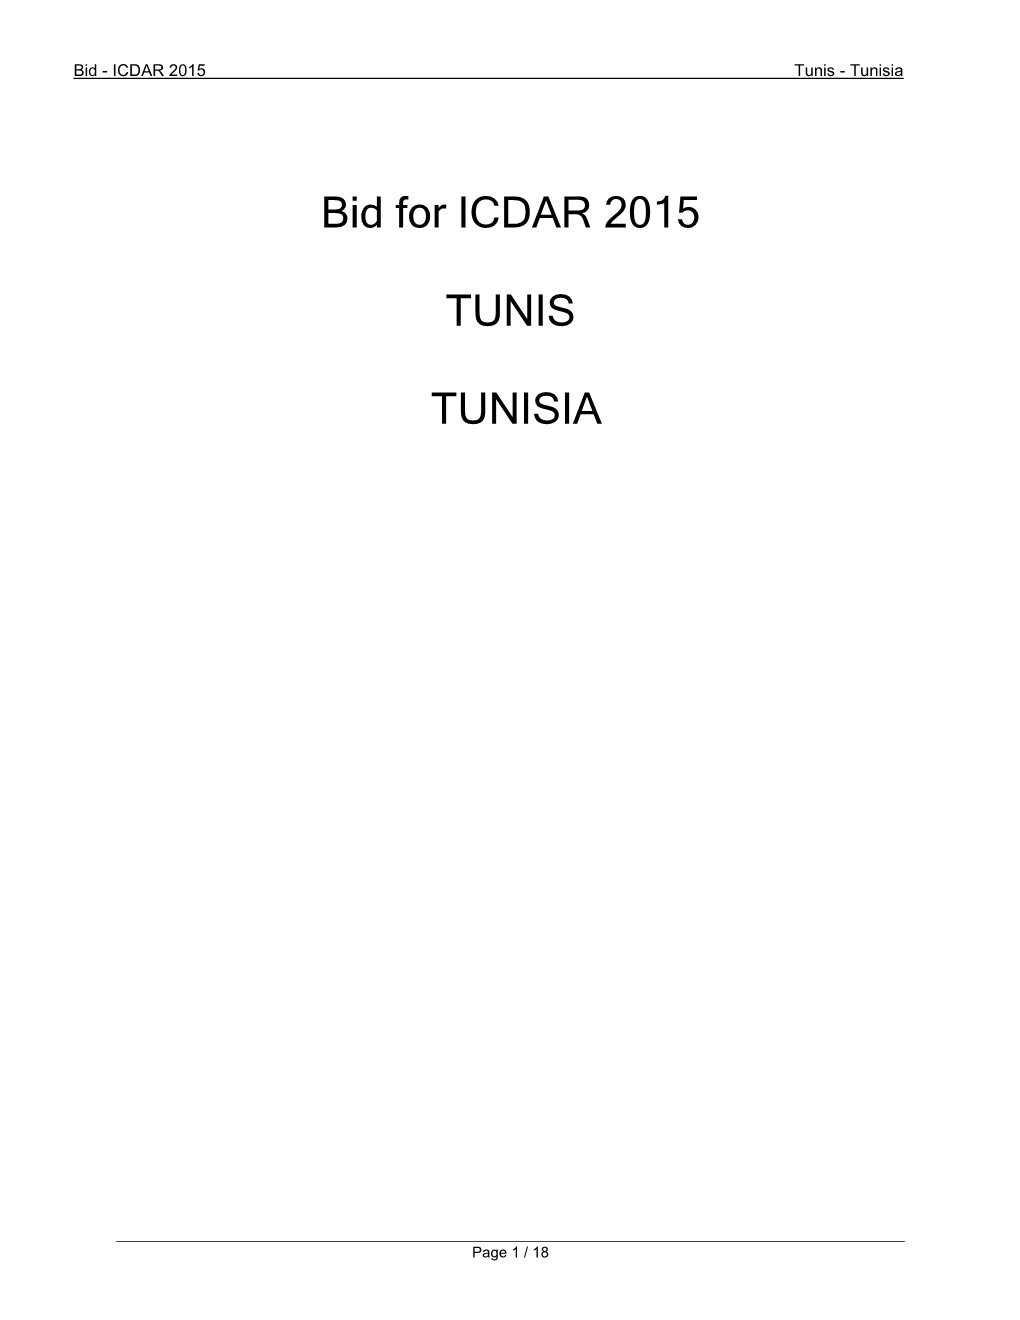 Bid for ICDAR 2015 TUNIS TUNISIA